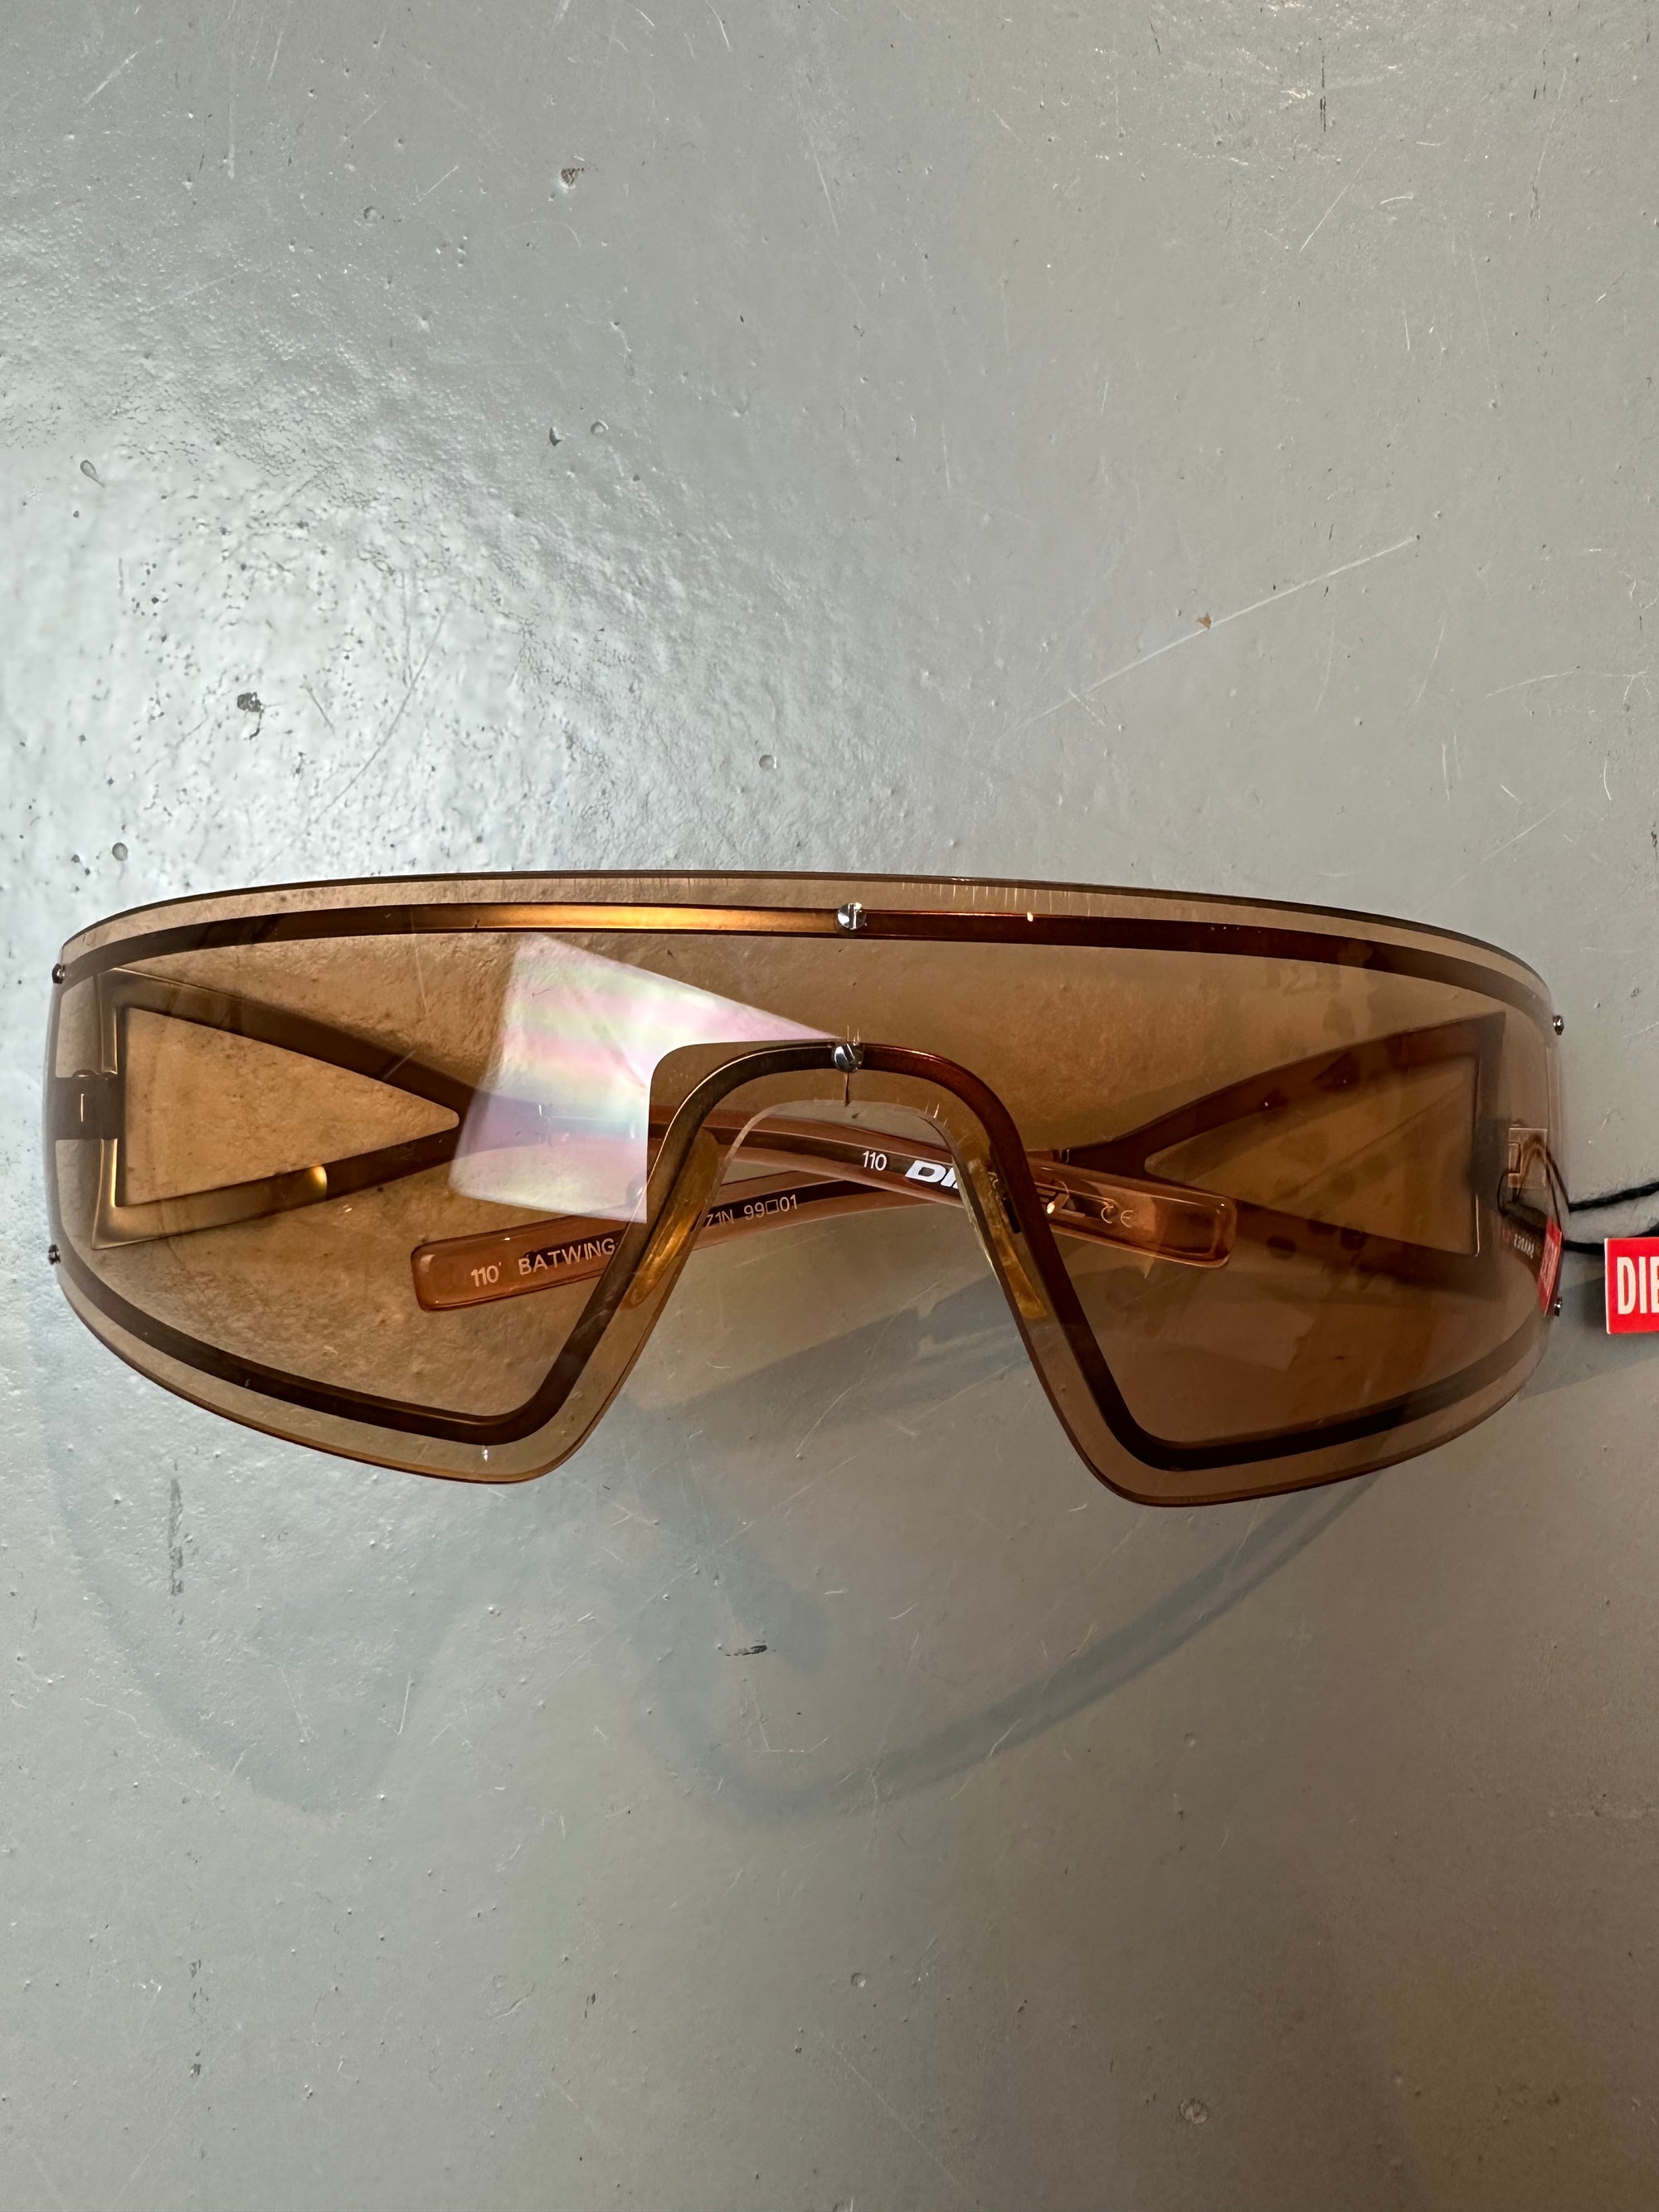 Detailliertes Produktbild von Diesel Sonnenbrille Brille von oben